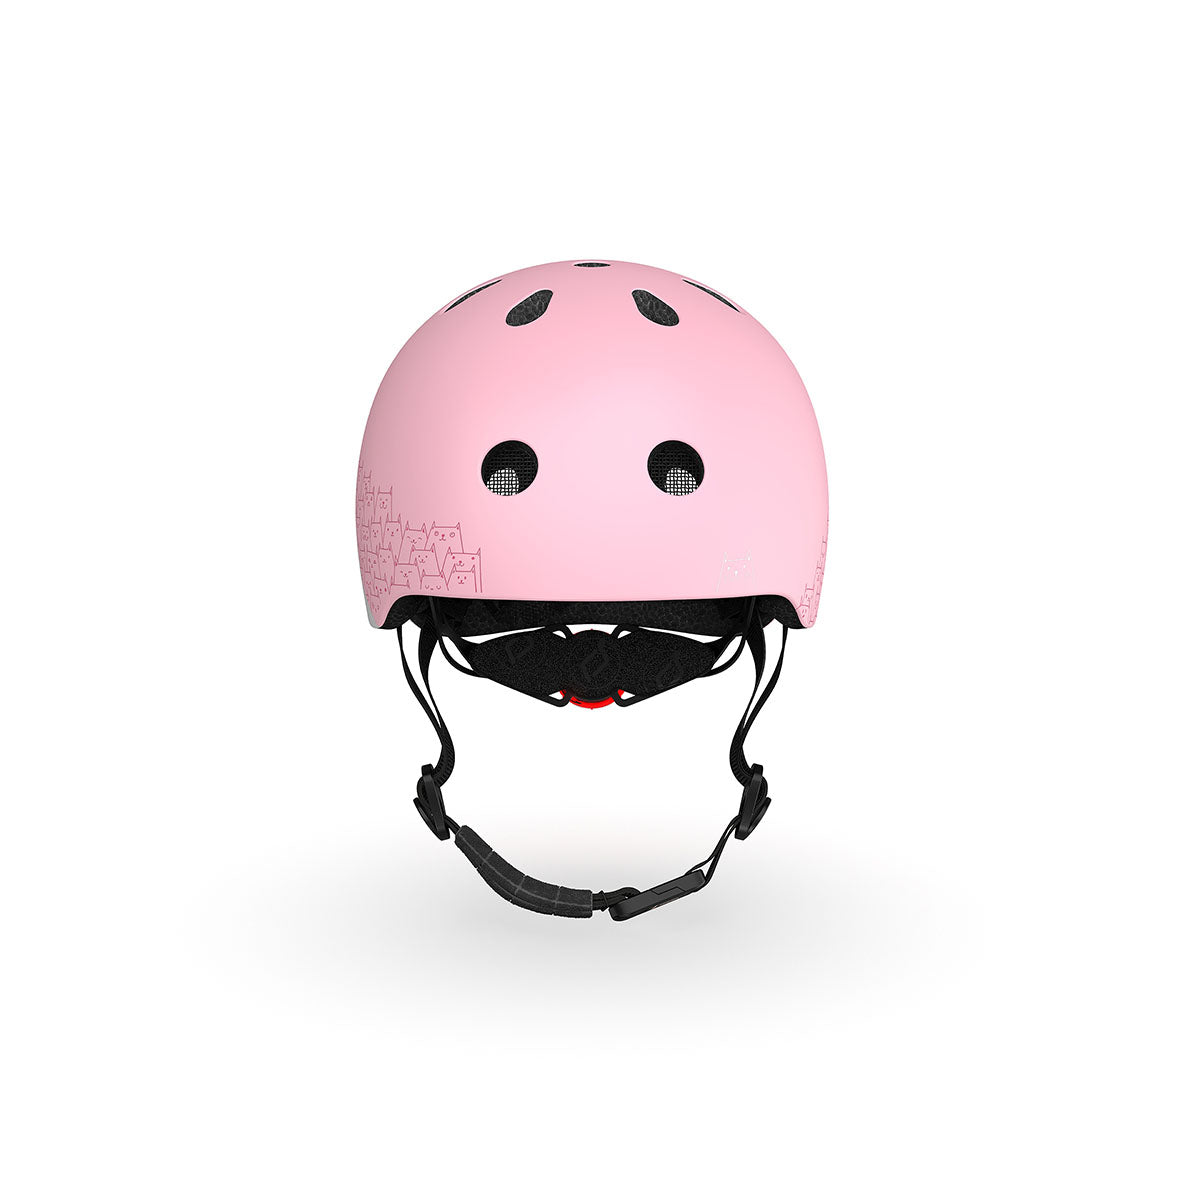 Met de Scoot and Ride helm XS reflective rose kan je jouw kindje met een gerust hart op pad laten gaan op de fiets, skates of step. Deze stoere kinderhelm beschermt het hoofdje van jouw kind tijdens het vallen. VanZus.